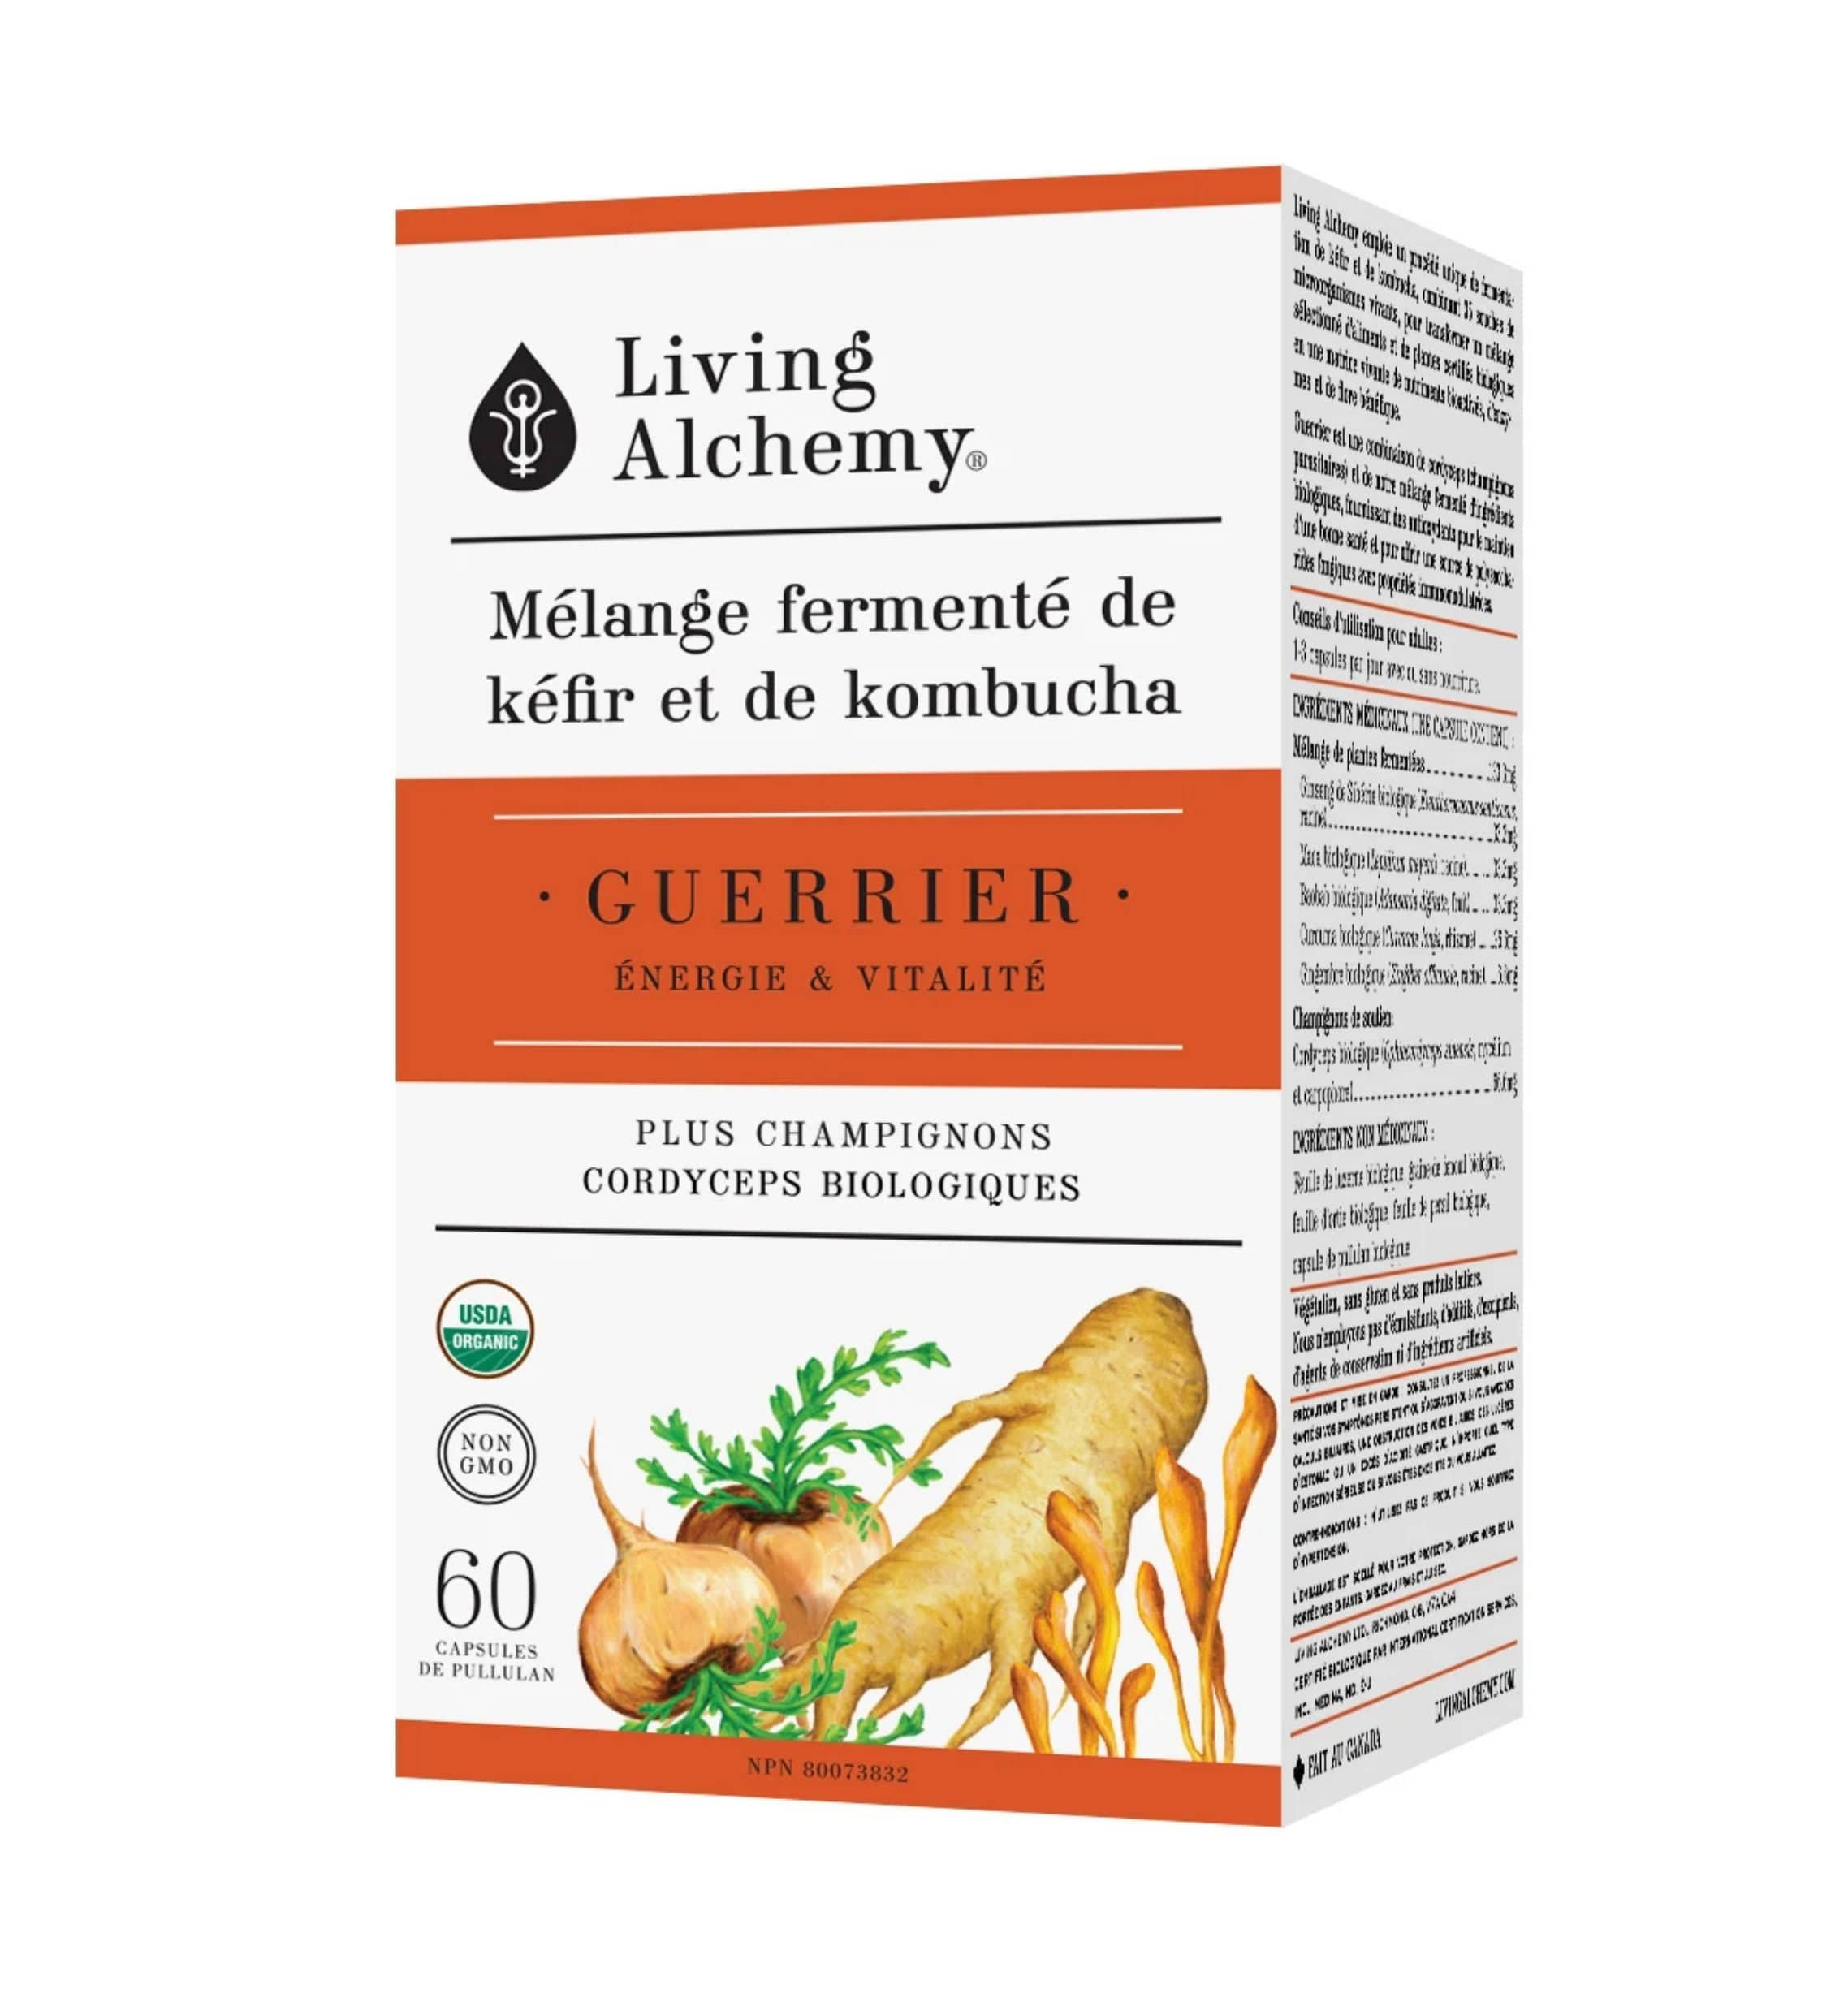 LIVING ALCHEMY Suppléments Mélange fermenté de kéfir et de kombucha - Guerrier (énergie et vitalité) 60caps